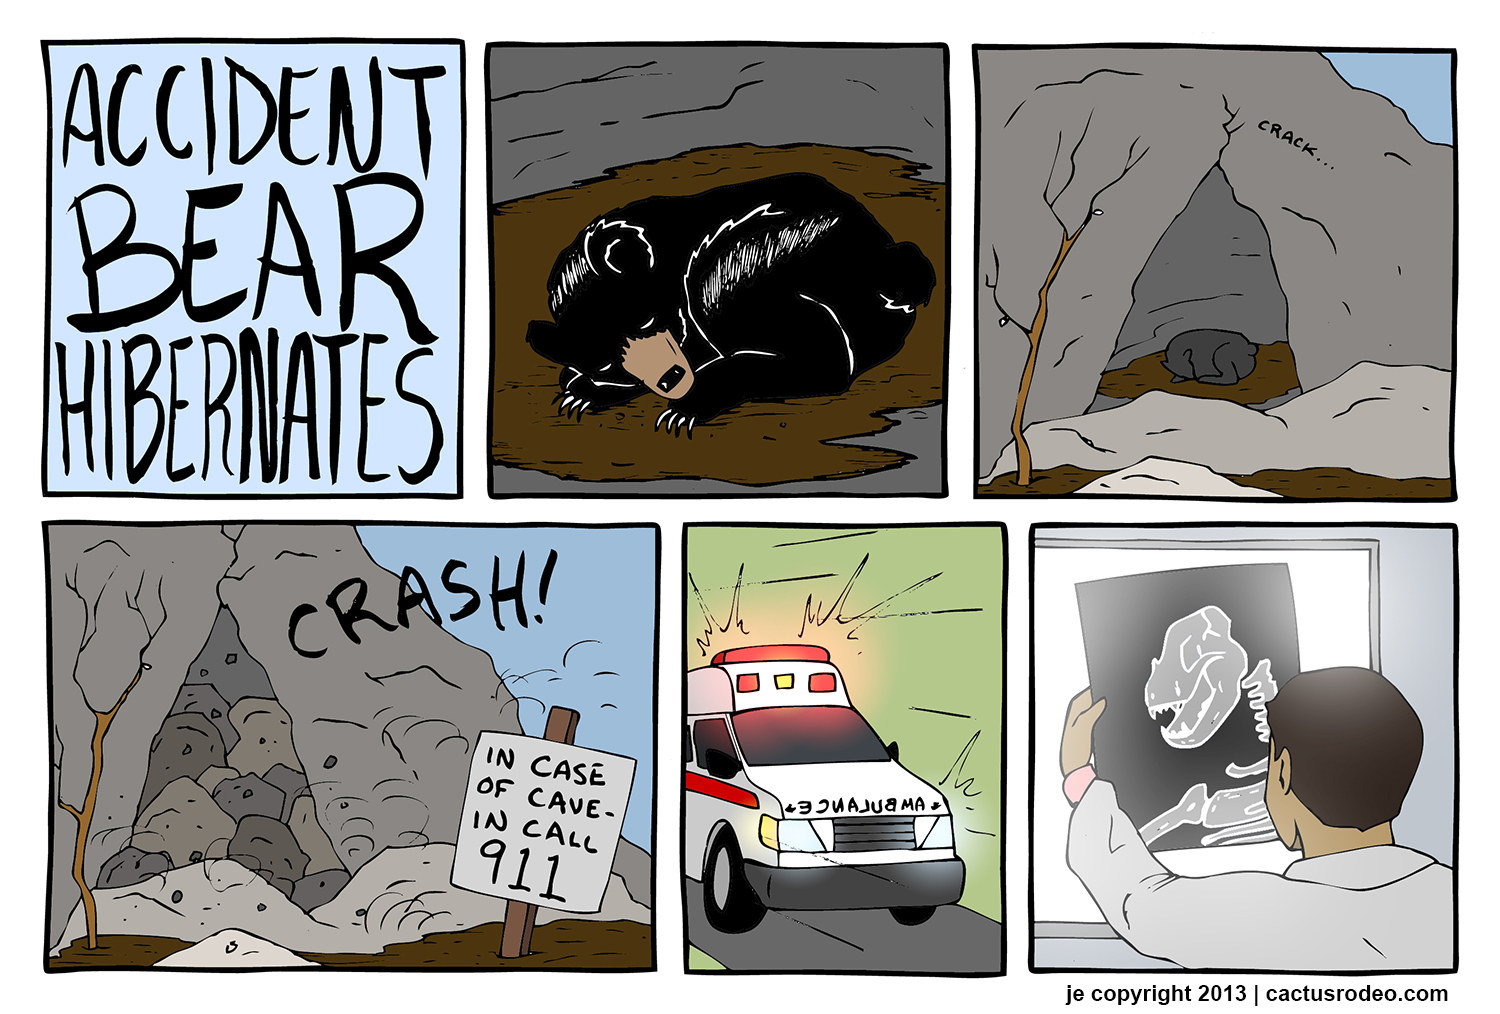 Accident Bear Hibernates